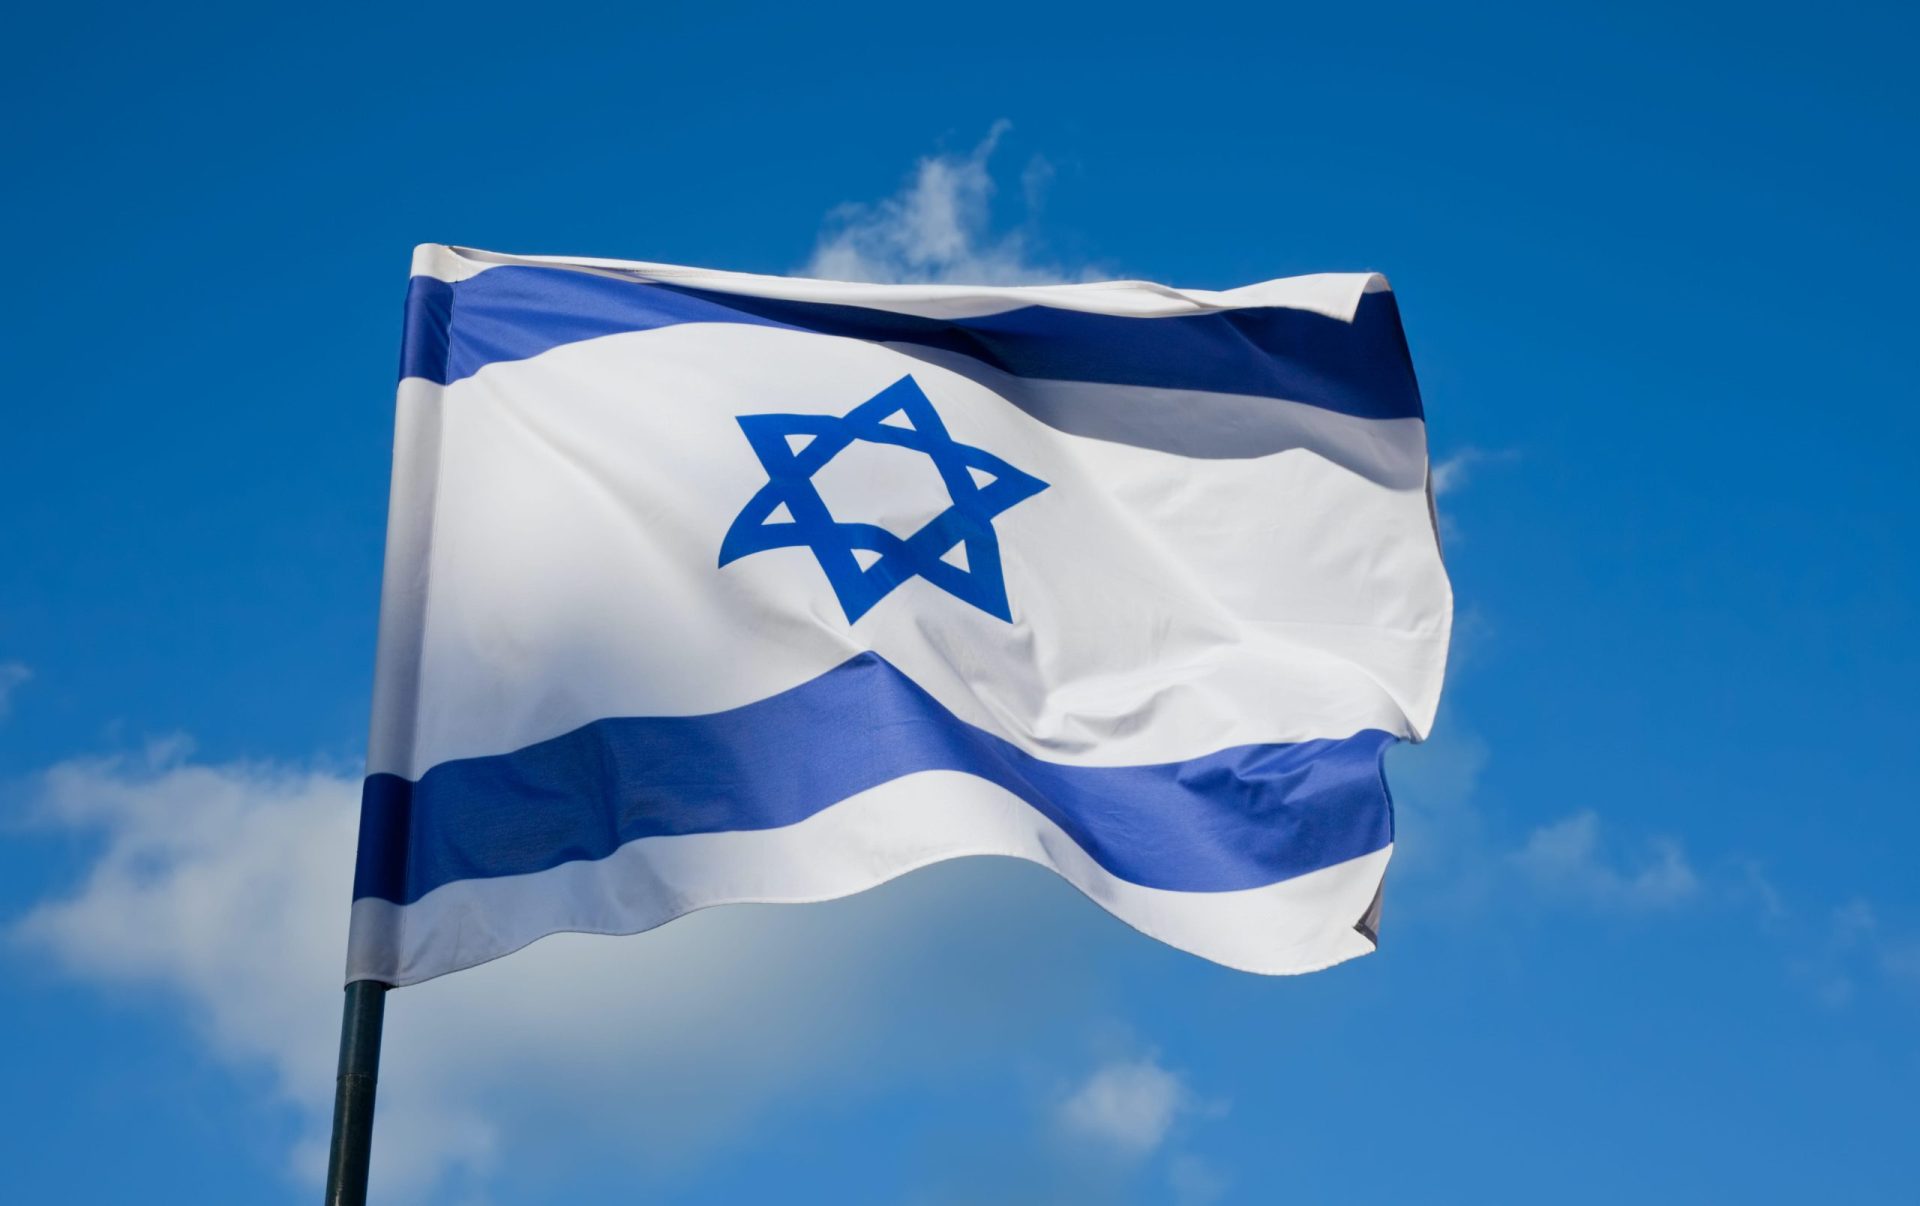 Israel assinala o genocídio de seis milhões de judeus pelo nazismo